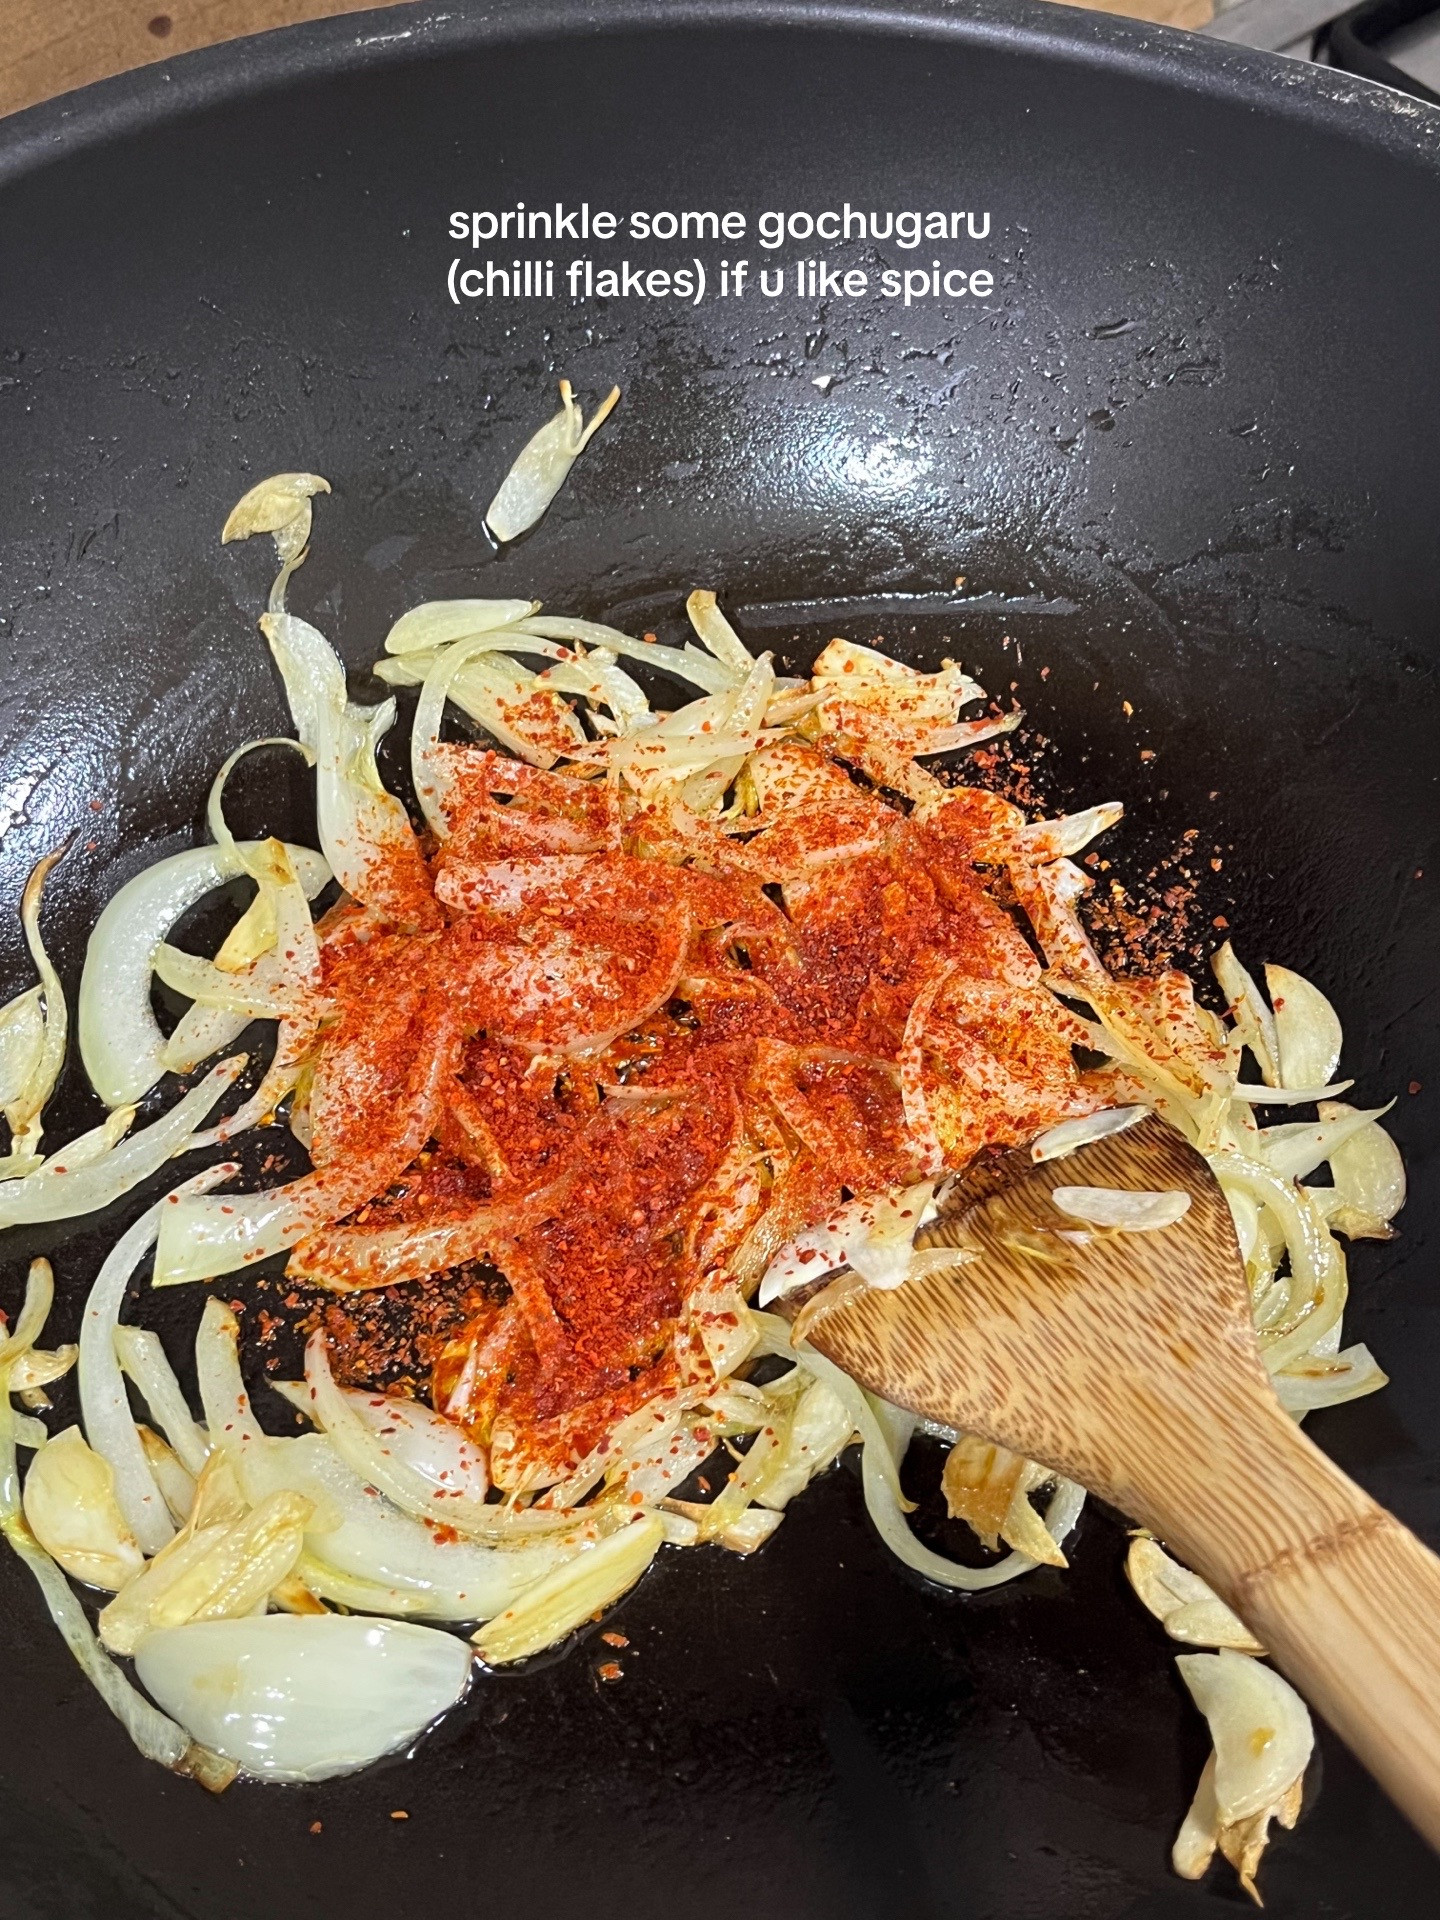 make kimchi miso gochujang pasta